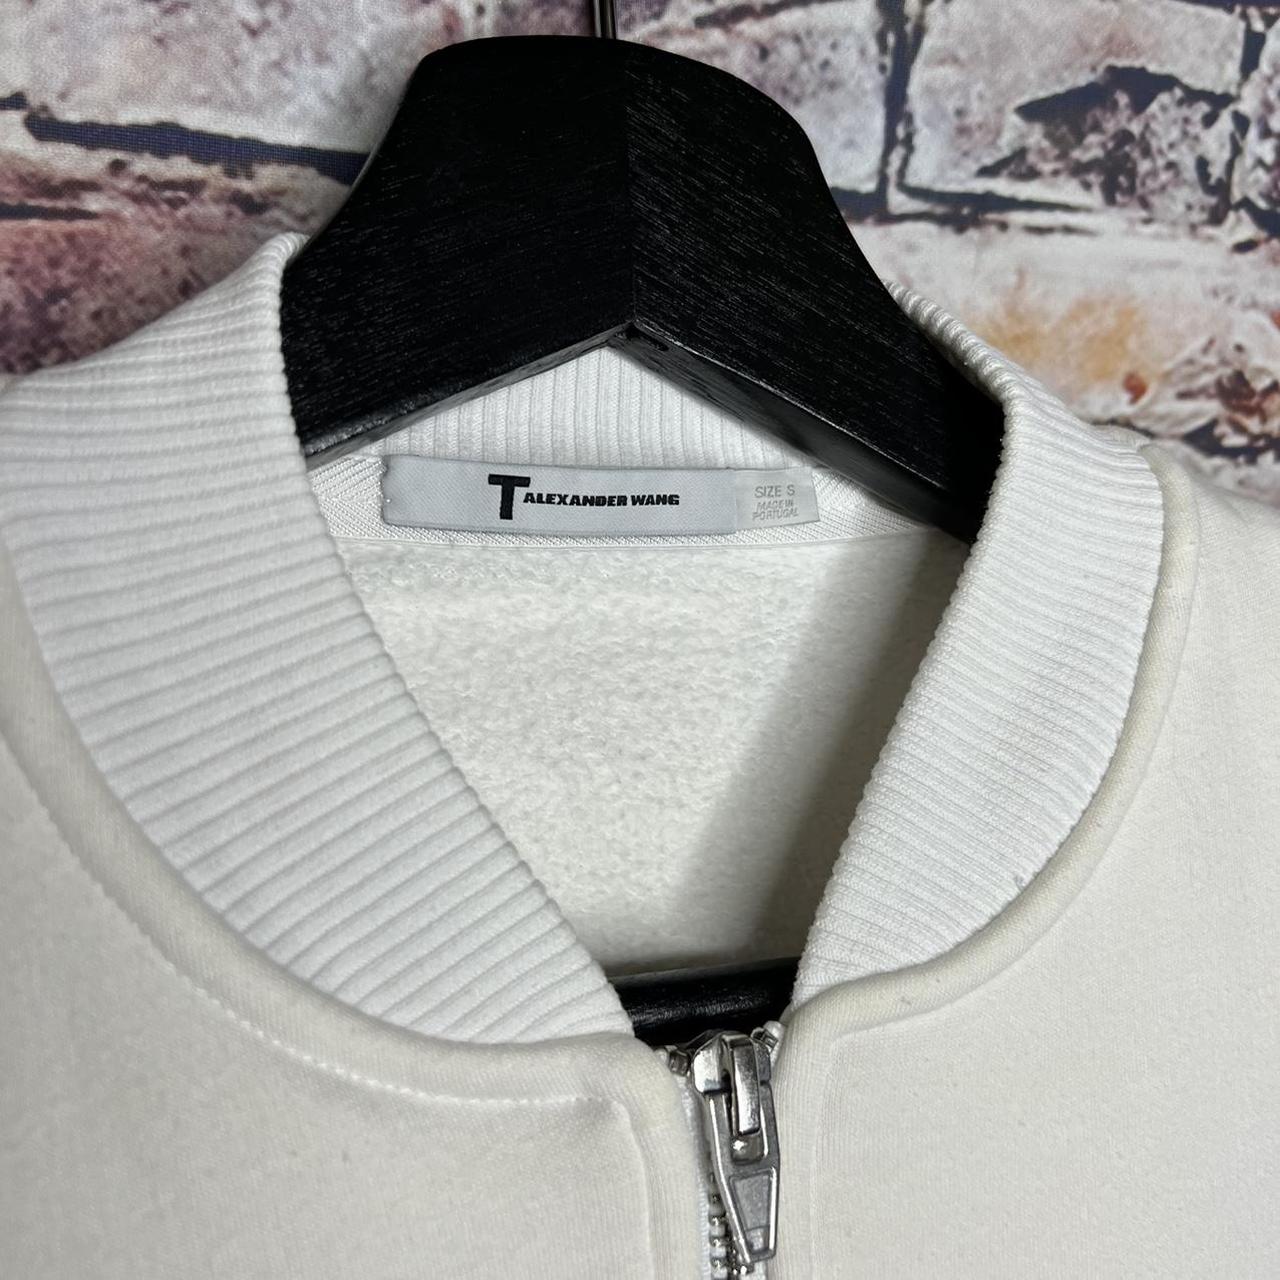 Product Image 3 - Alexander Wang Fleece Bomber Jacket

Size: